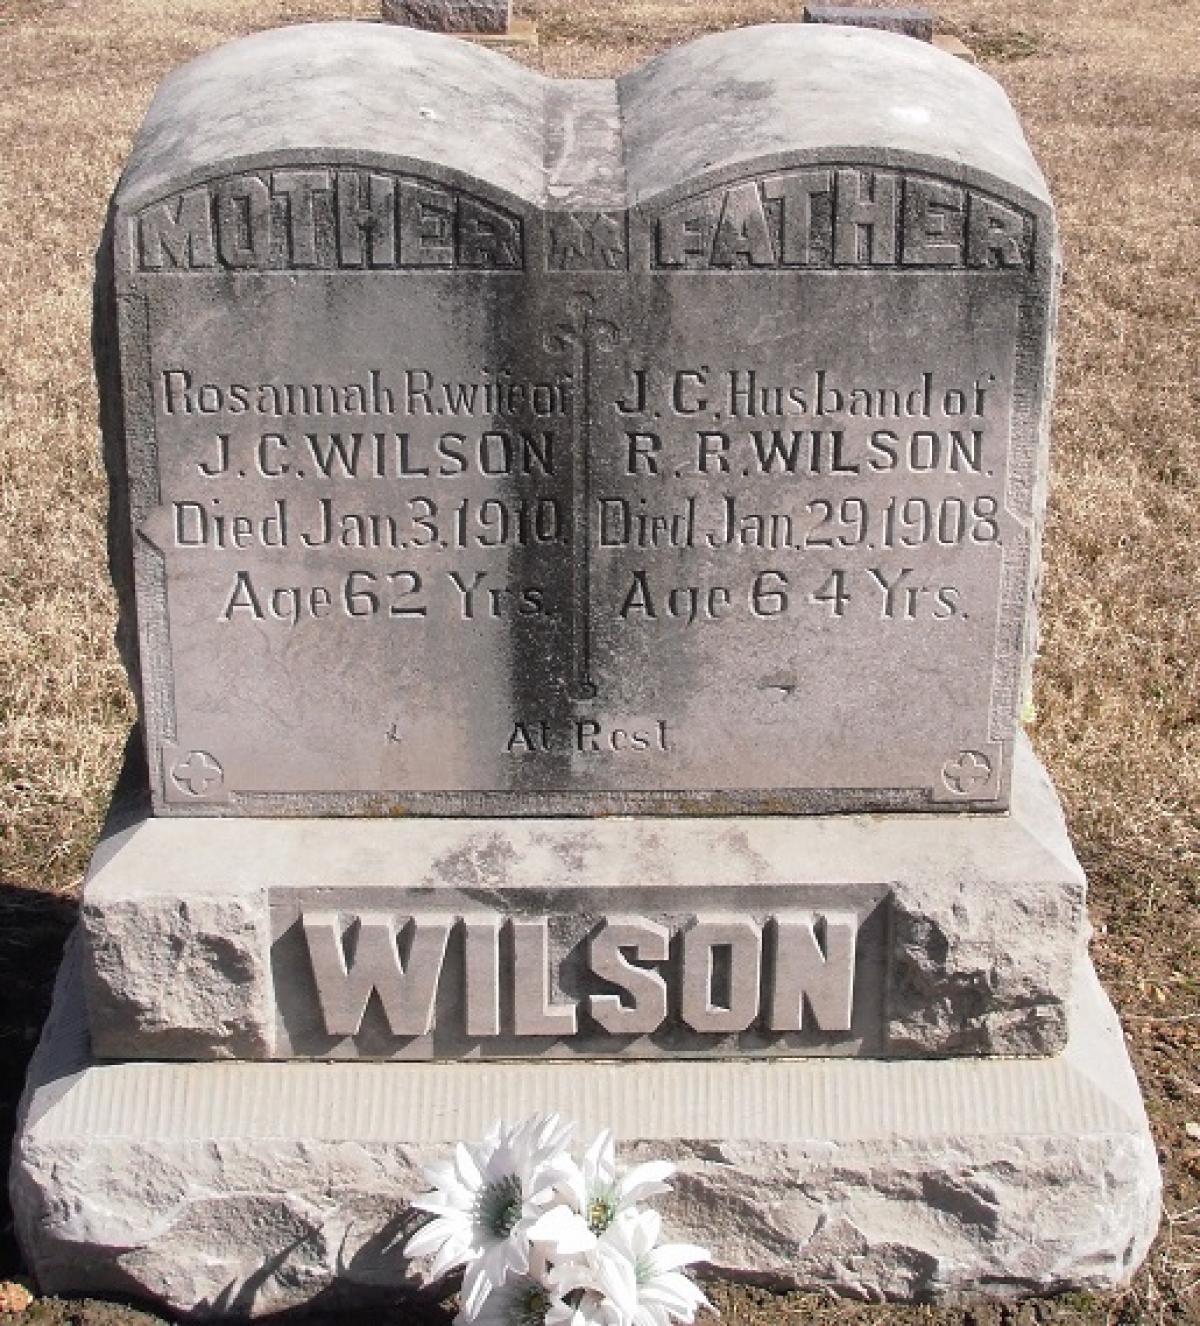 OK, Grove, Olympus Cemetery, Wilson, Rosannah R. & J. C. Headstone